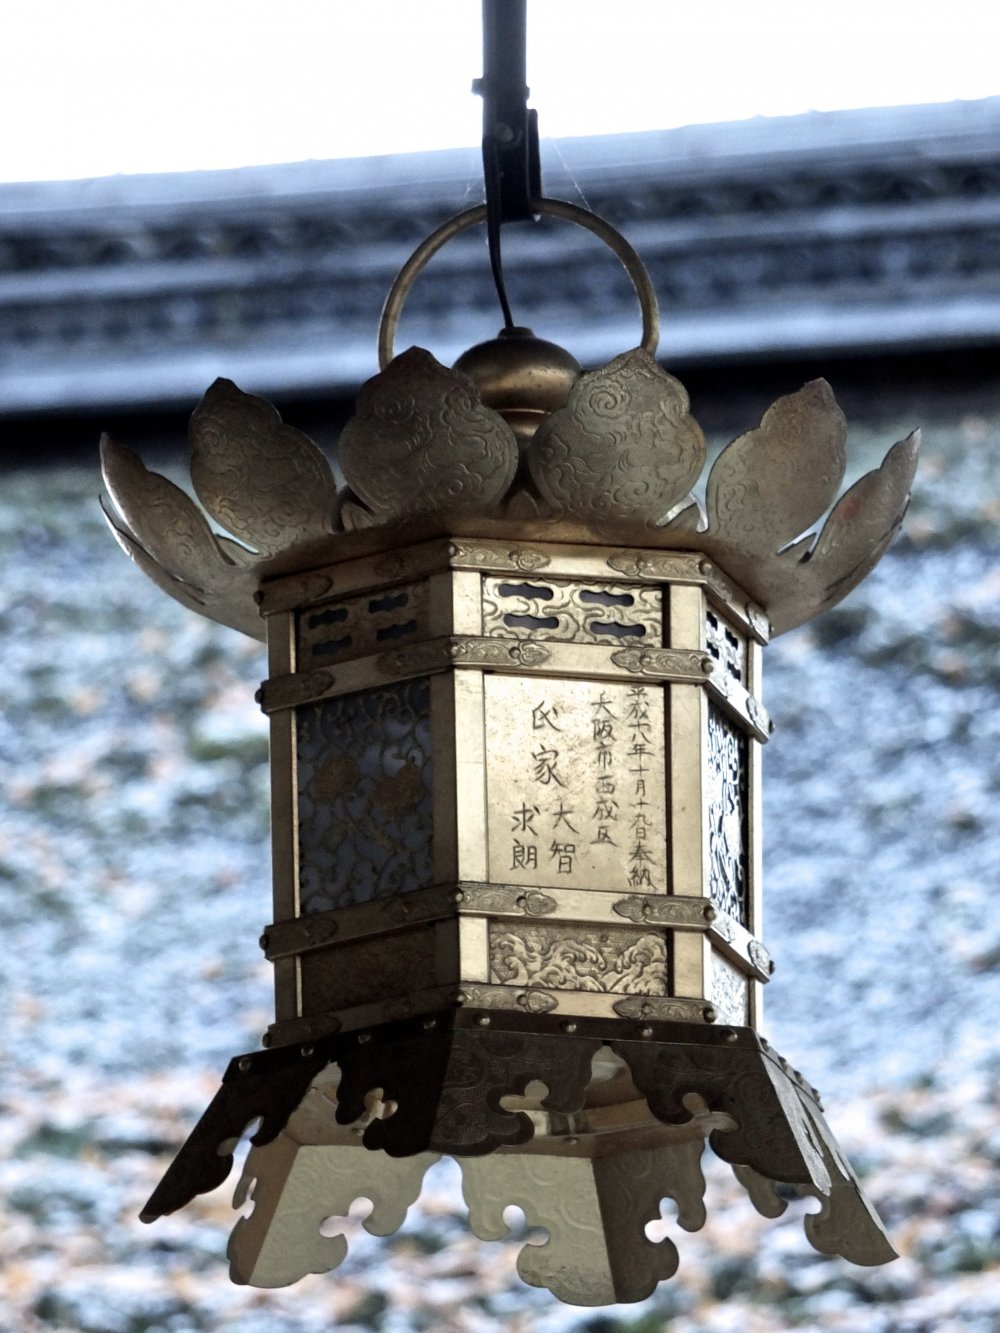 屋根の前の霜の降りた灯籠がこの上なく美しい